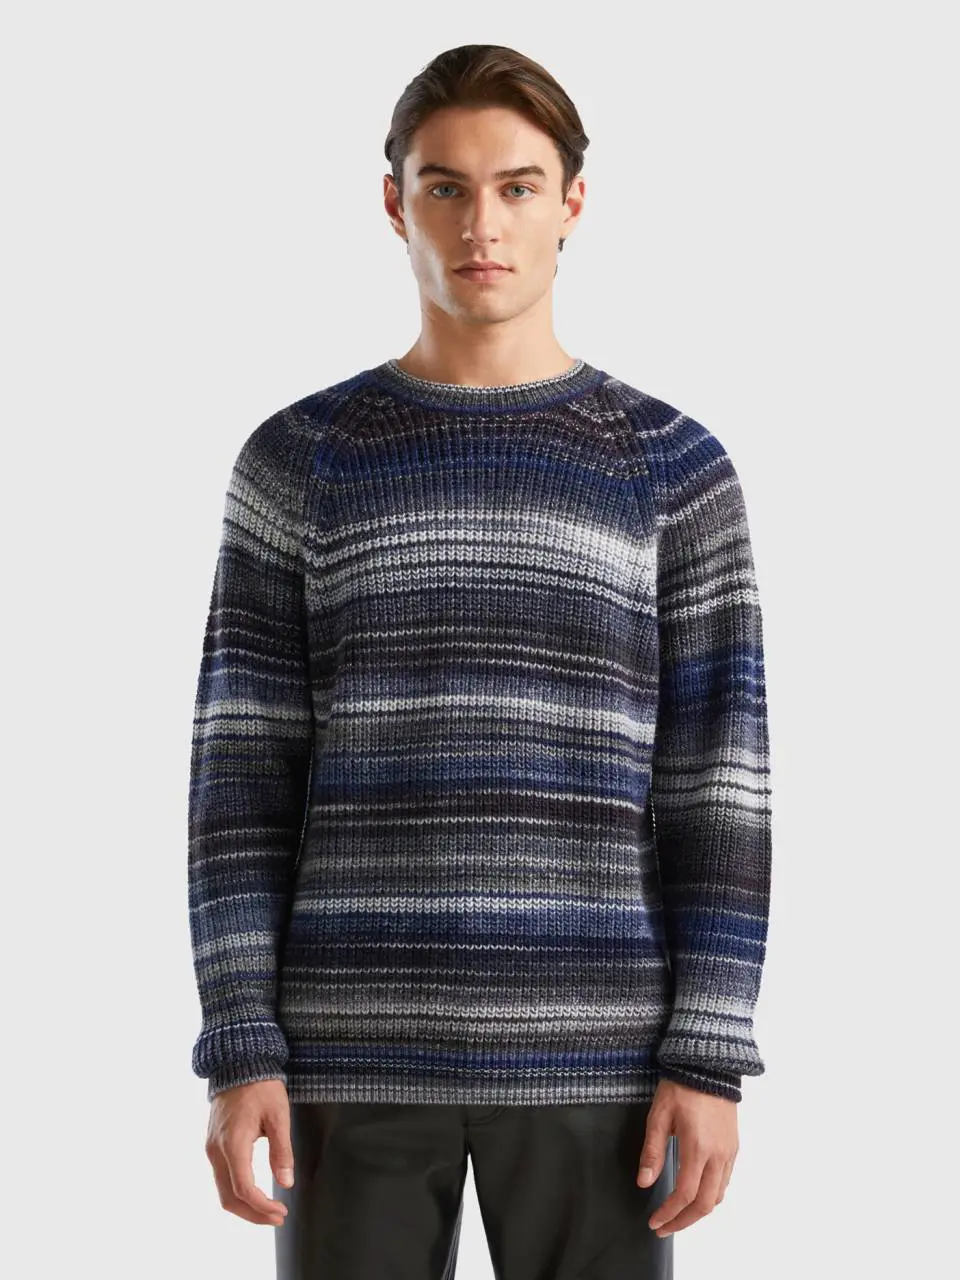 Benetton multicolor sweater in wool blend. 1